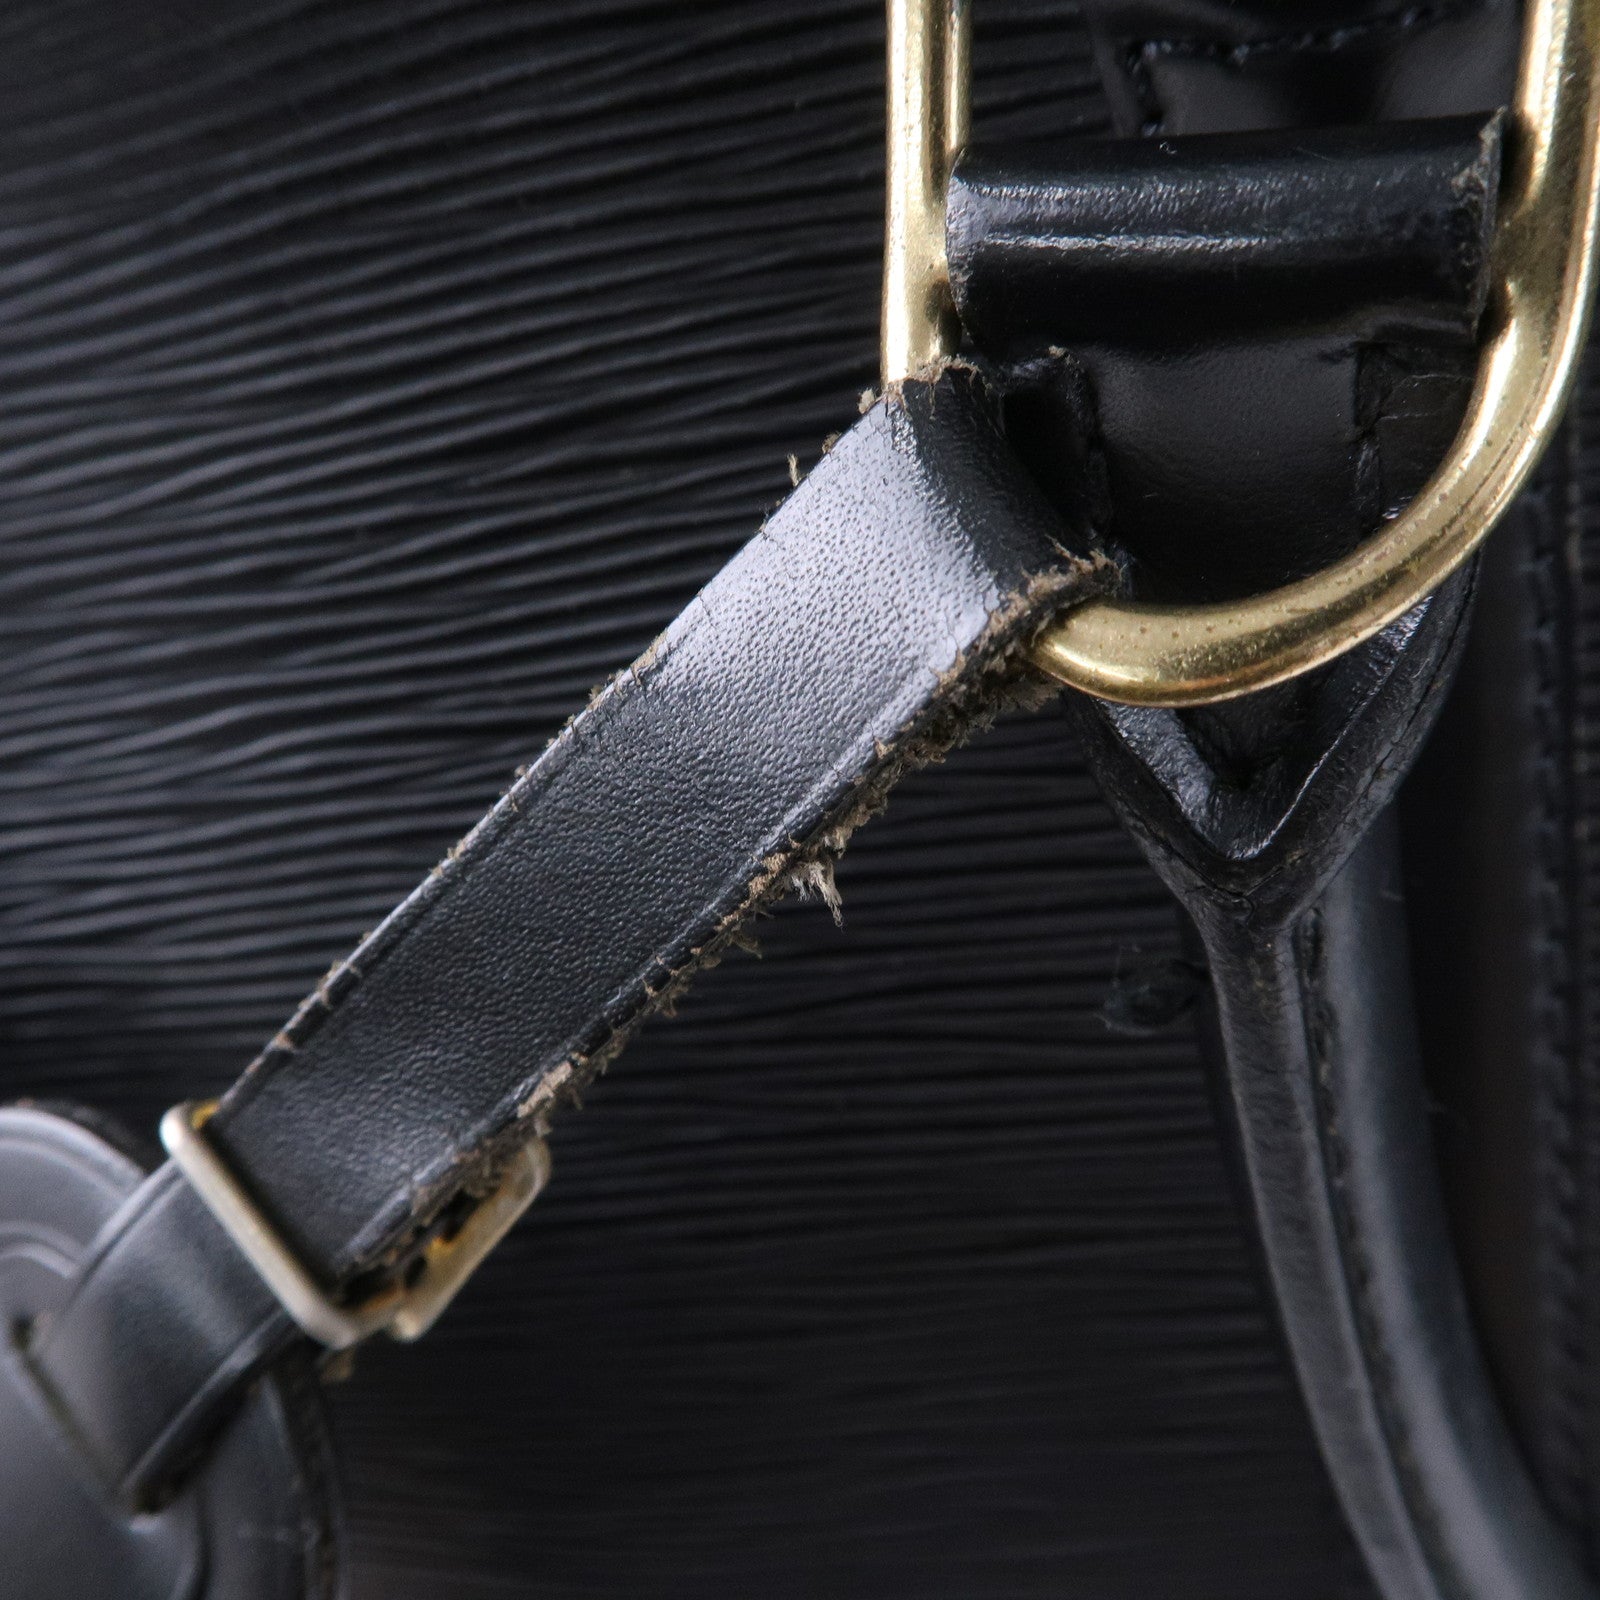 Louis Vuitton Blue Epi Leather 'Porte Documents' Briefcase w/ Strap